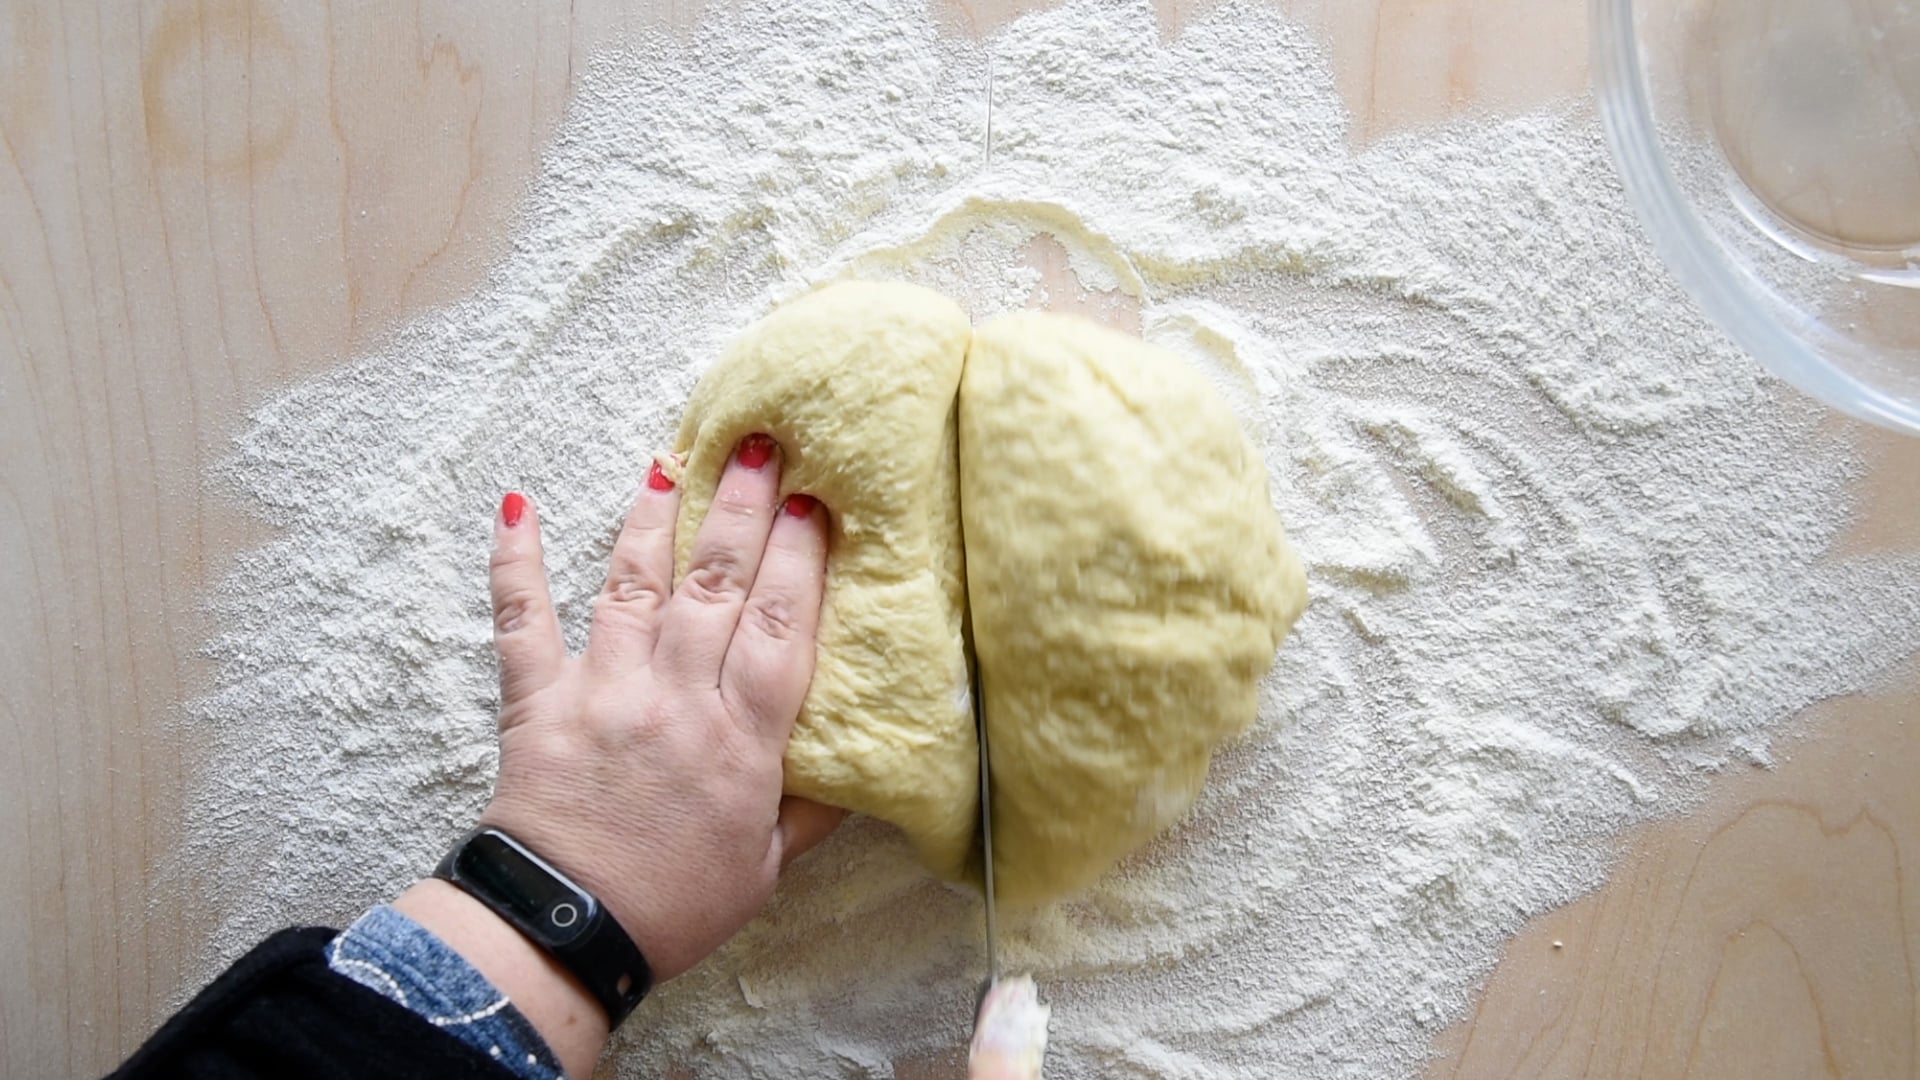 Cut the dough in half